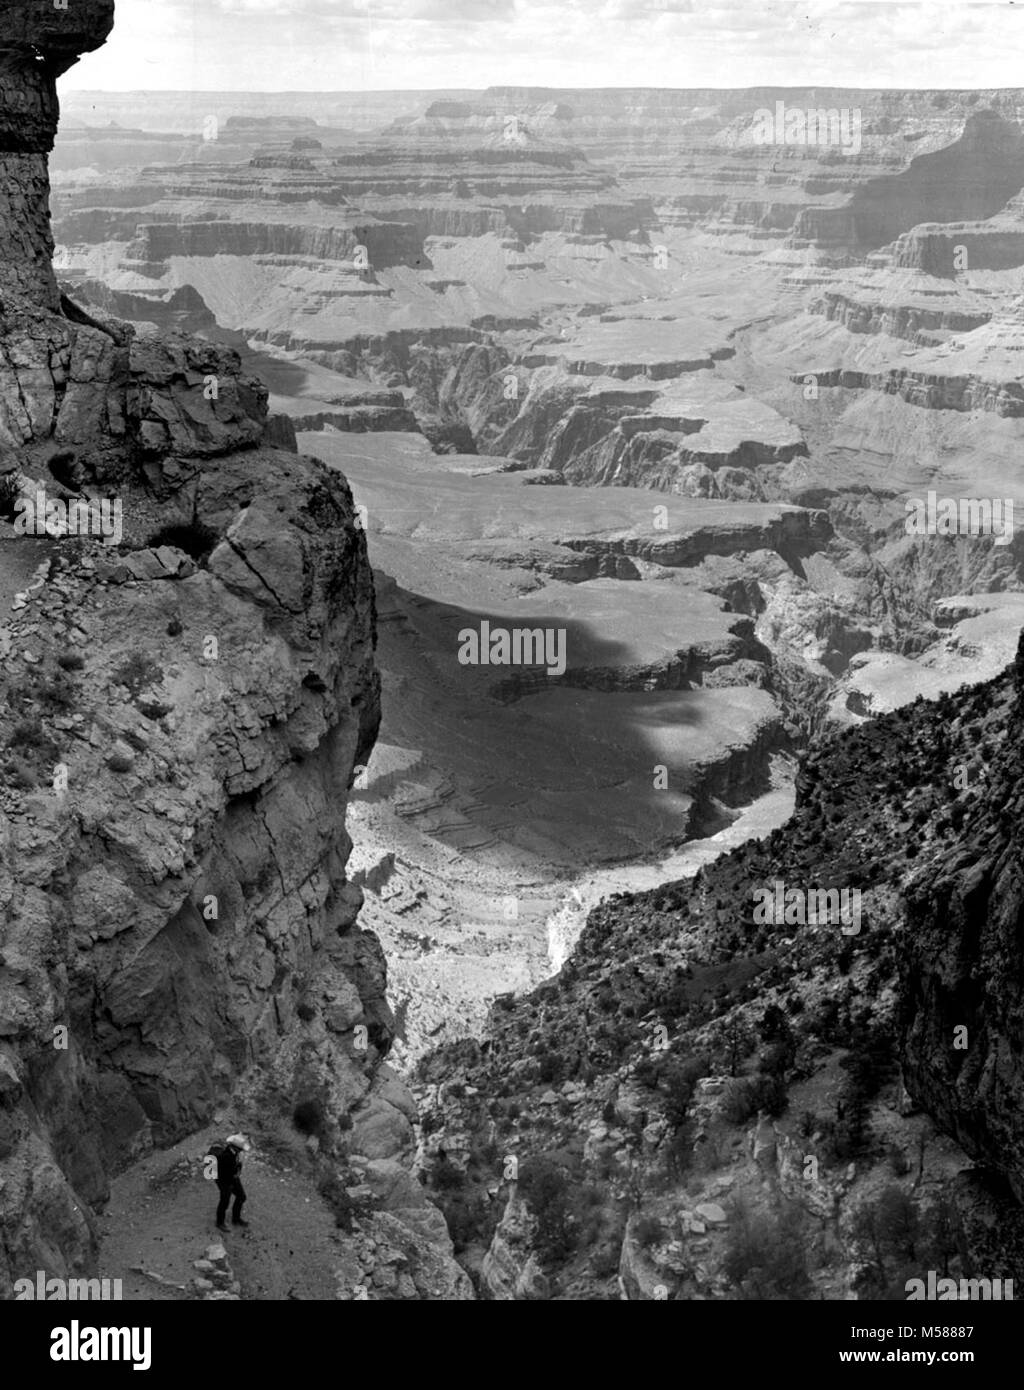 Grand Canyon storico sentiero di Kaibab escursionista al camino. Visualizza in basso S KAIBAB TRAIL - VISTA IN CAMINO CON escursionista di seguito. Al di là del canyon. 11 GIU 1963 , WILLIAMS. Foto Stock